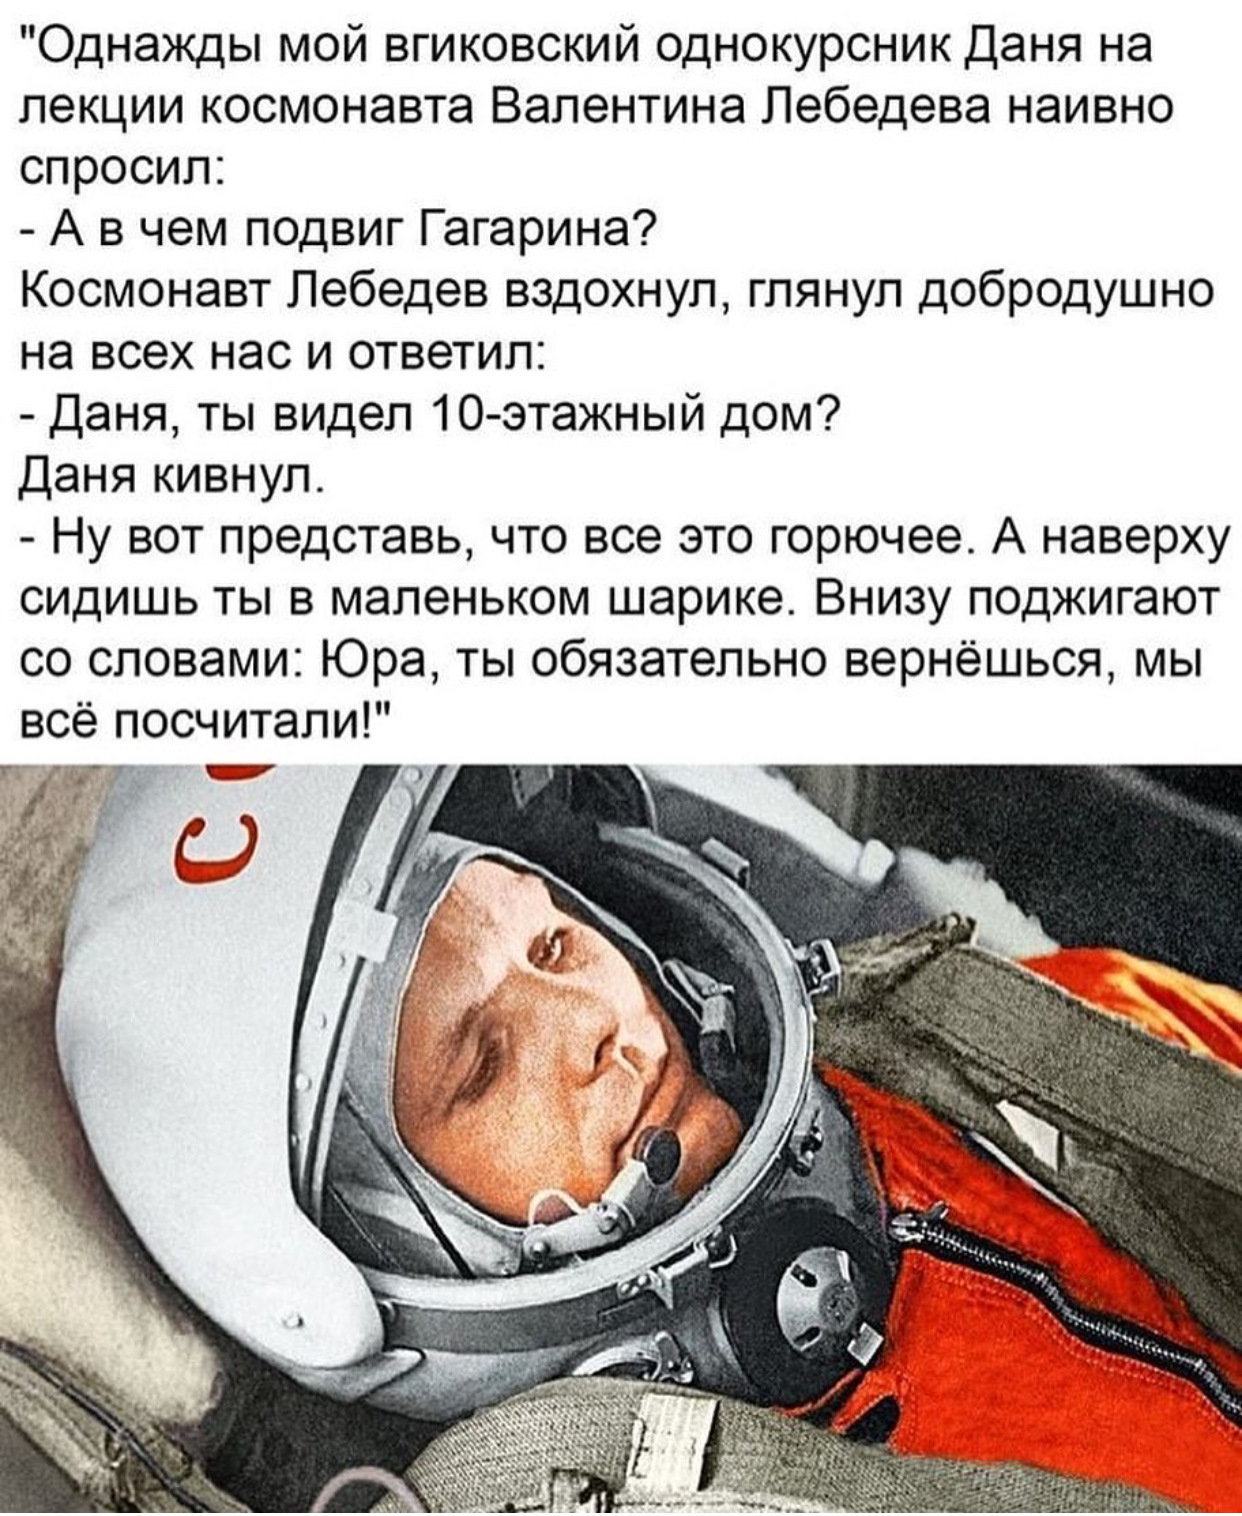 В чем героизм Гагарина